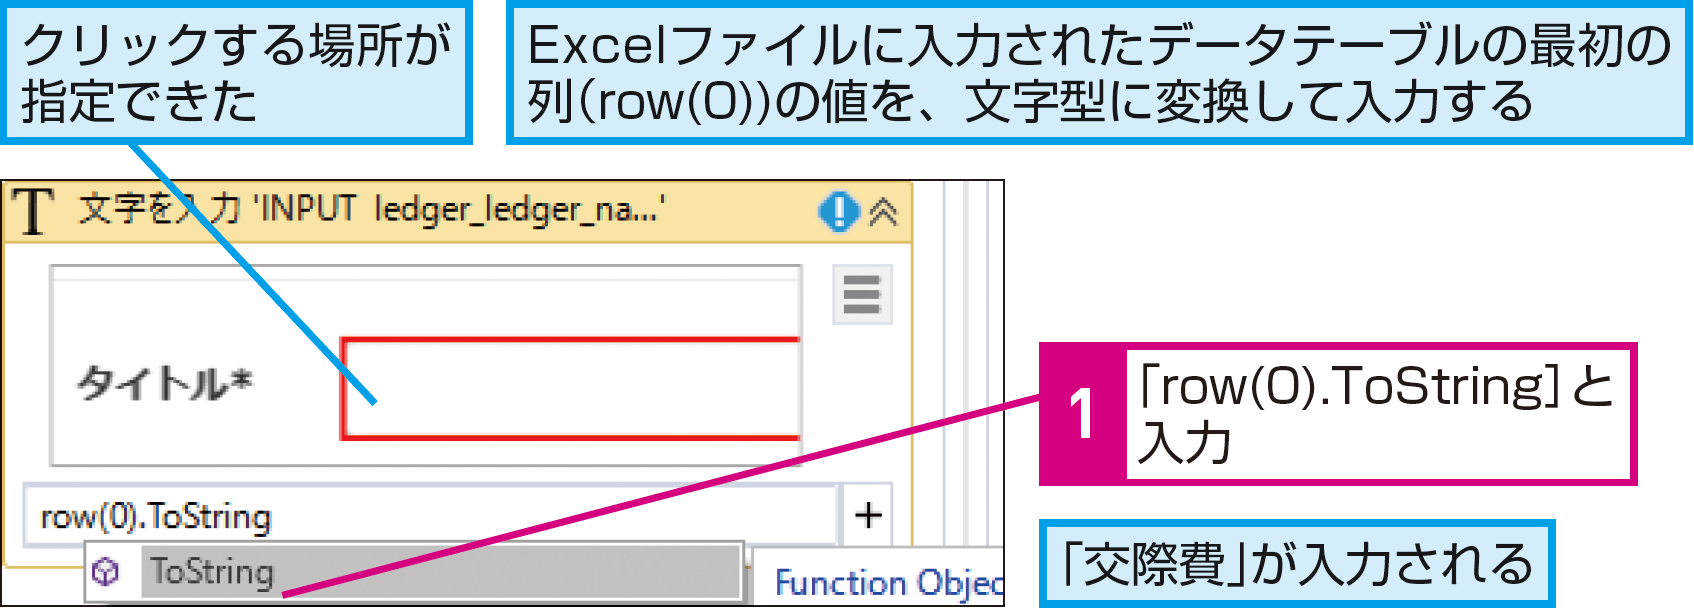 ExcelとWebアプリを自動処理するには 2(Webアプリのデータ入力） - できるUiPath